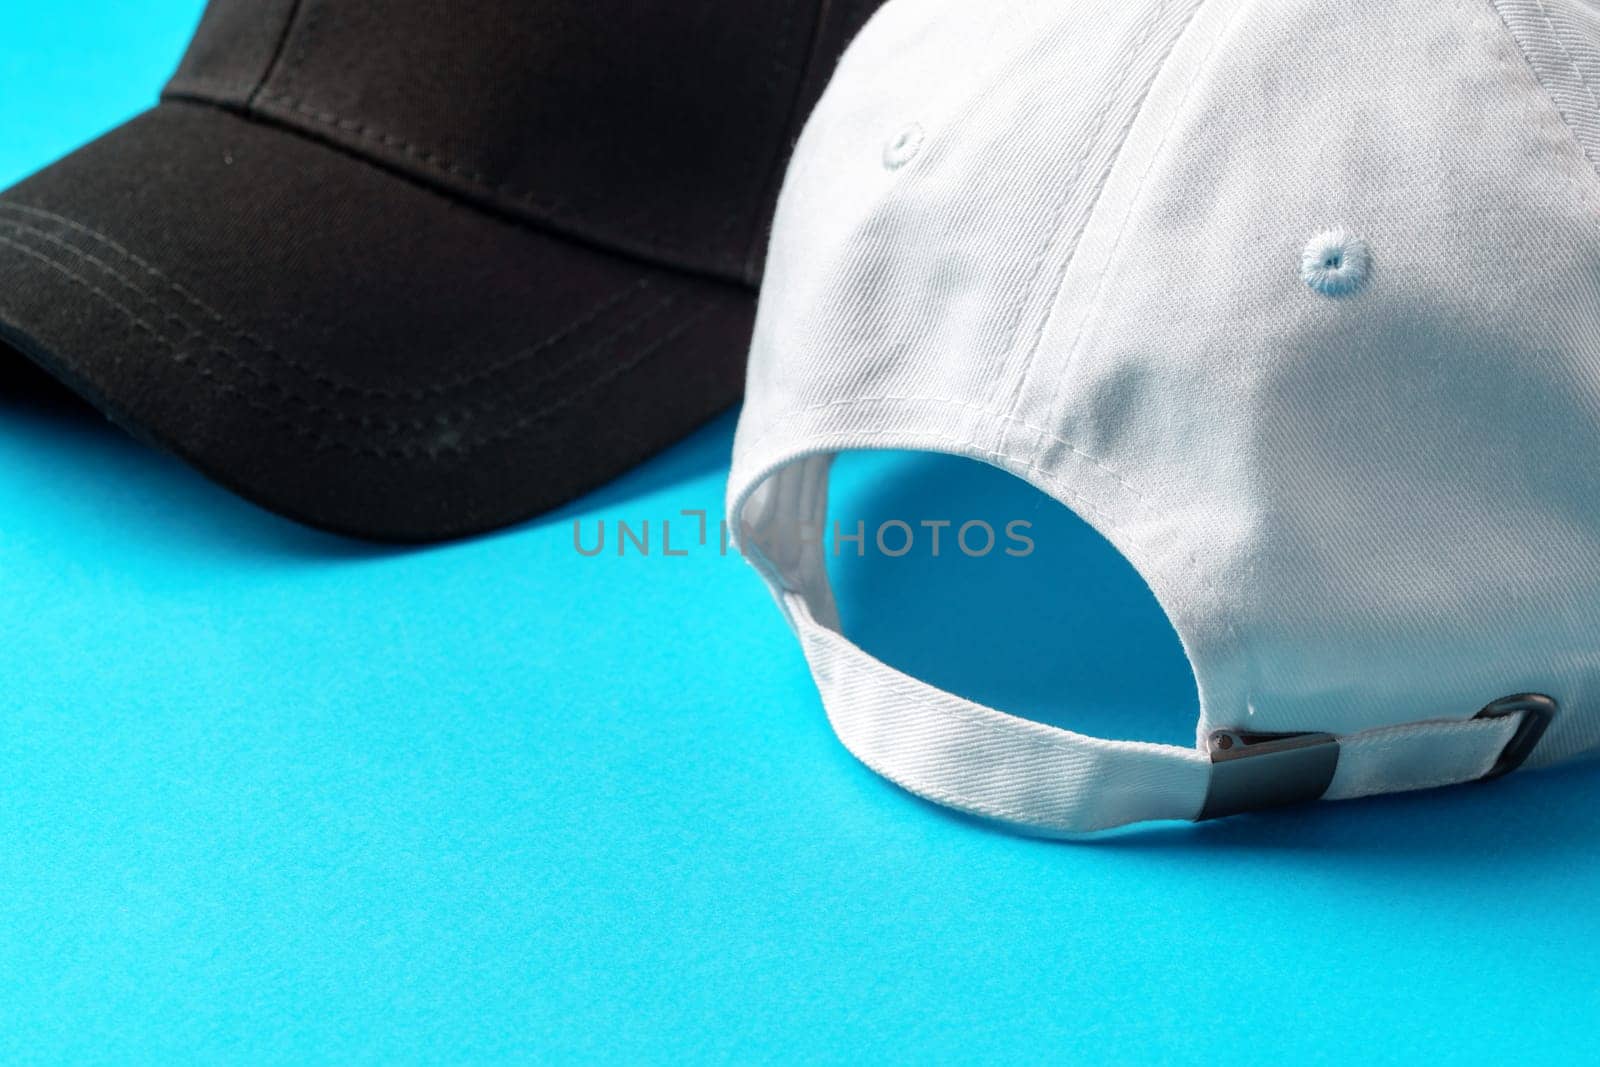 Baseball caps on blue background studio shot close up